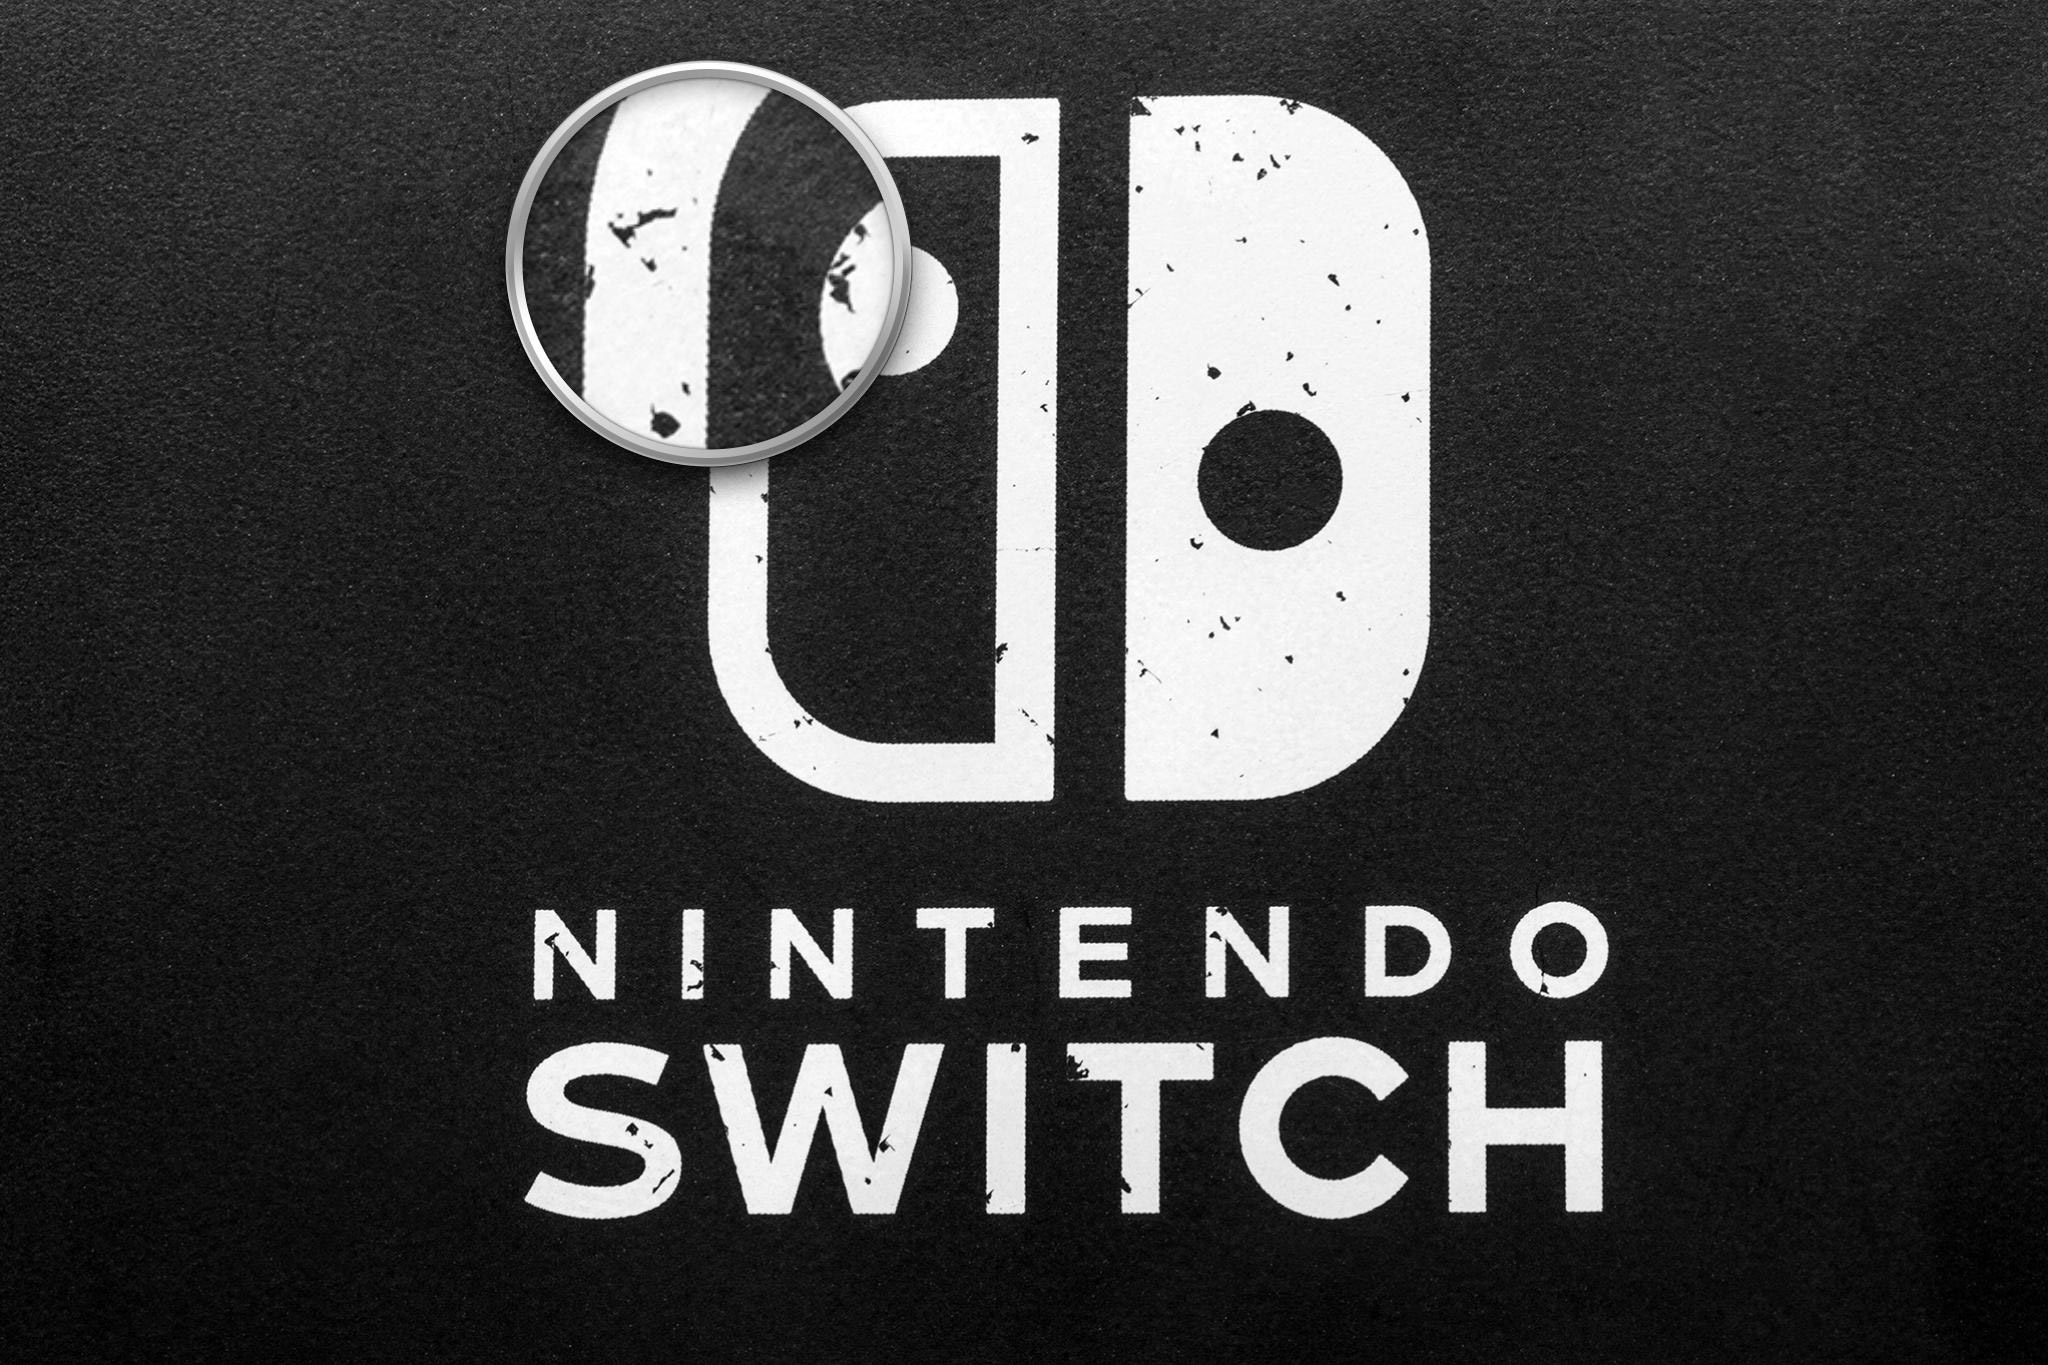 Nintendo_Switch_troc_son_1.jpg